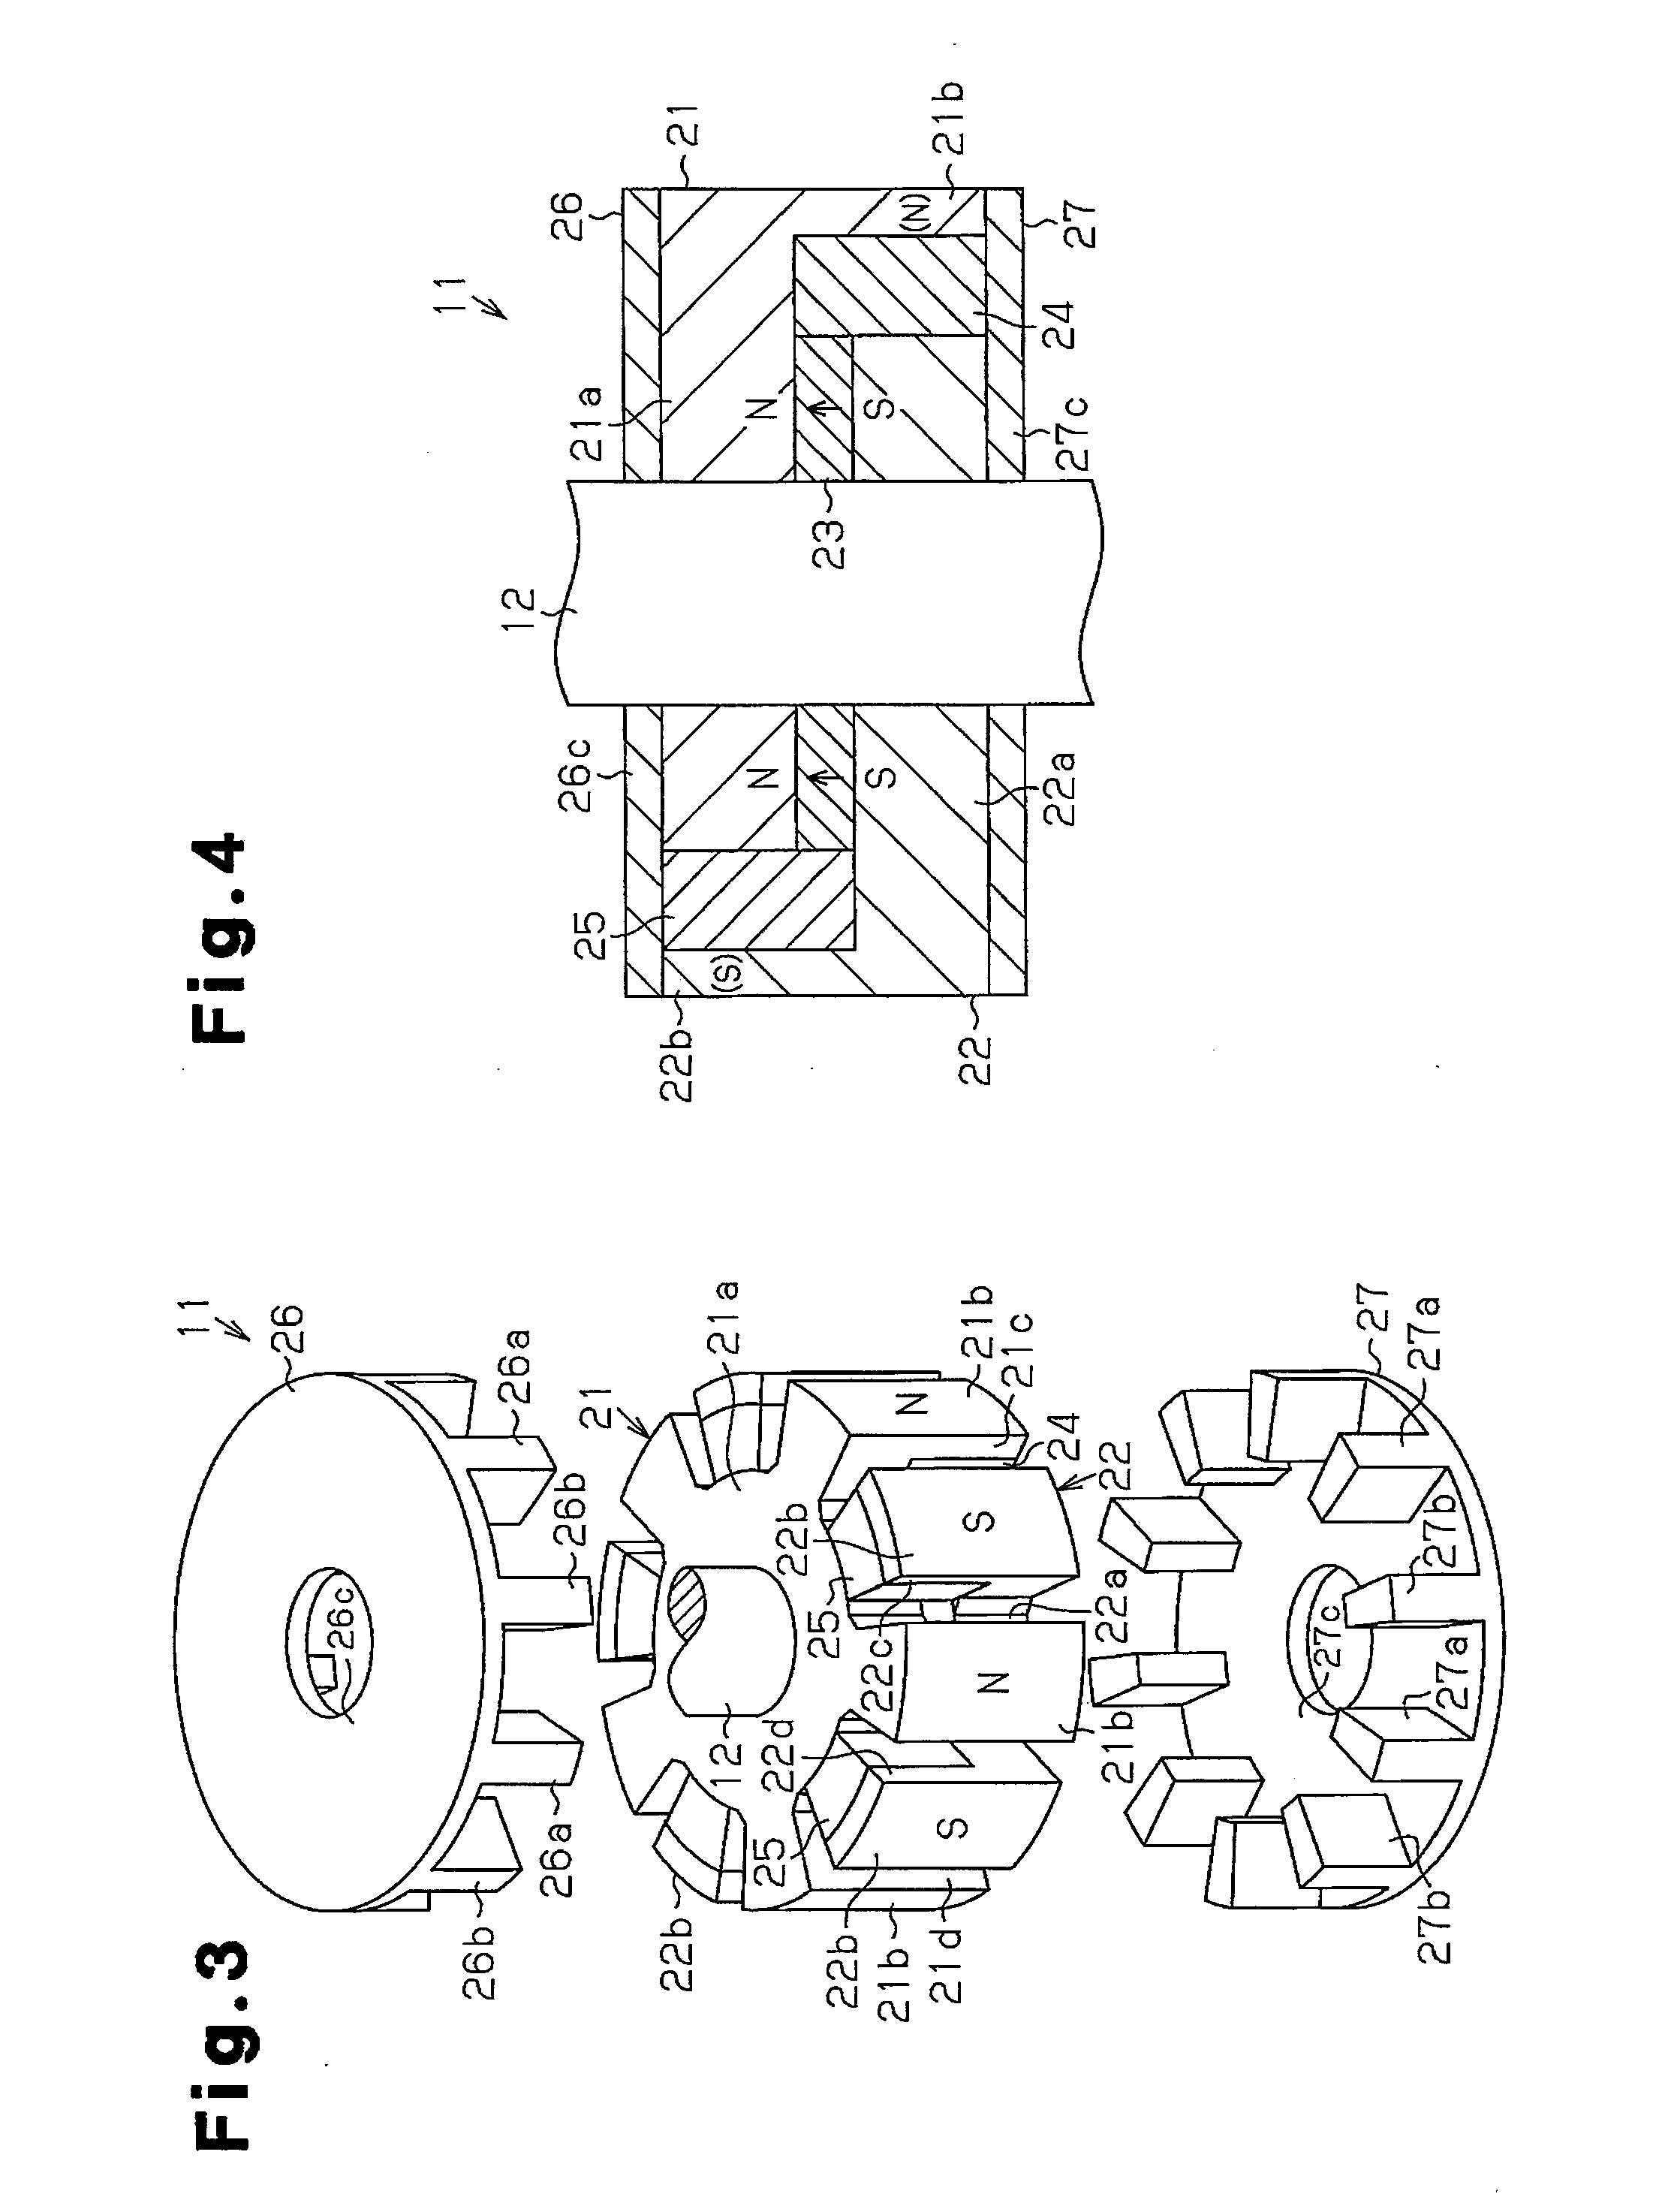 Rotor and motor